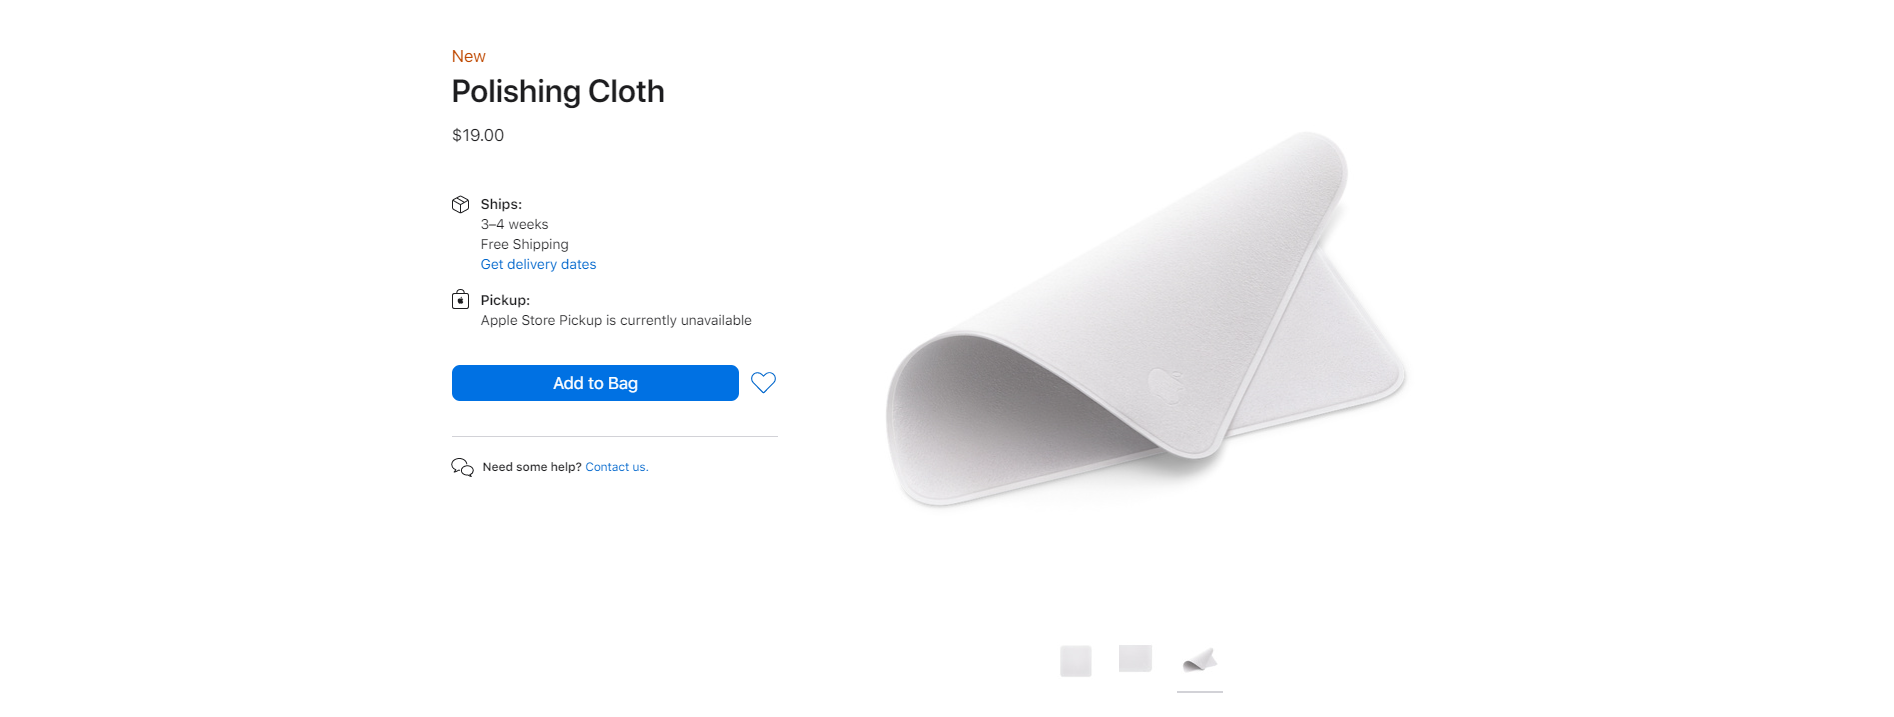 Apple ra mắt phụ kiện vải bóng Polishing Cloth lau màn hình, giá 19 USD cho 1 tấm